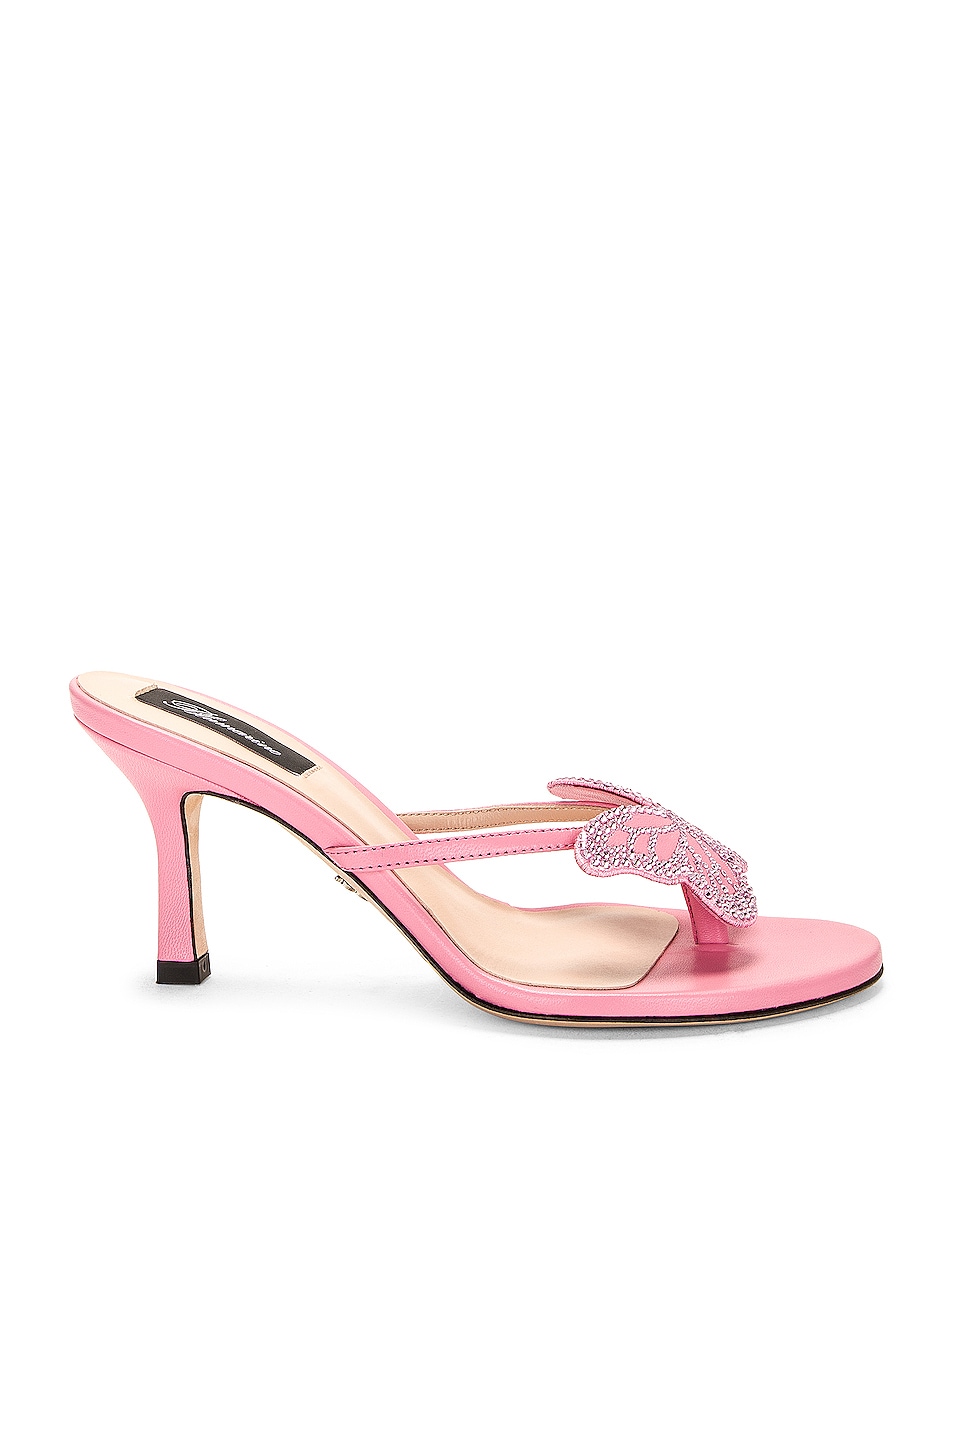 Blumarine Butterfly Sandals in Pink | FWRD